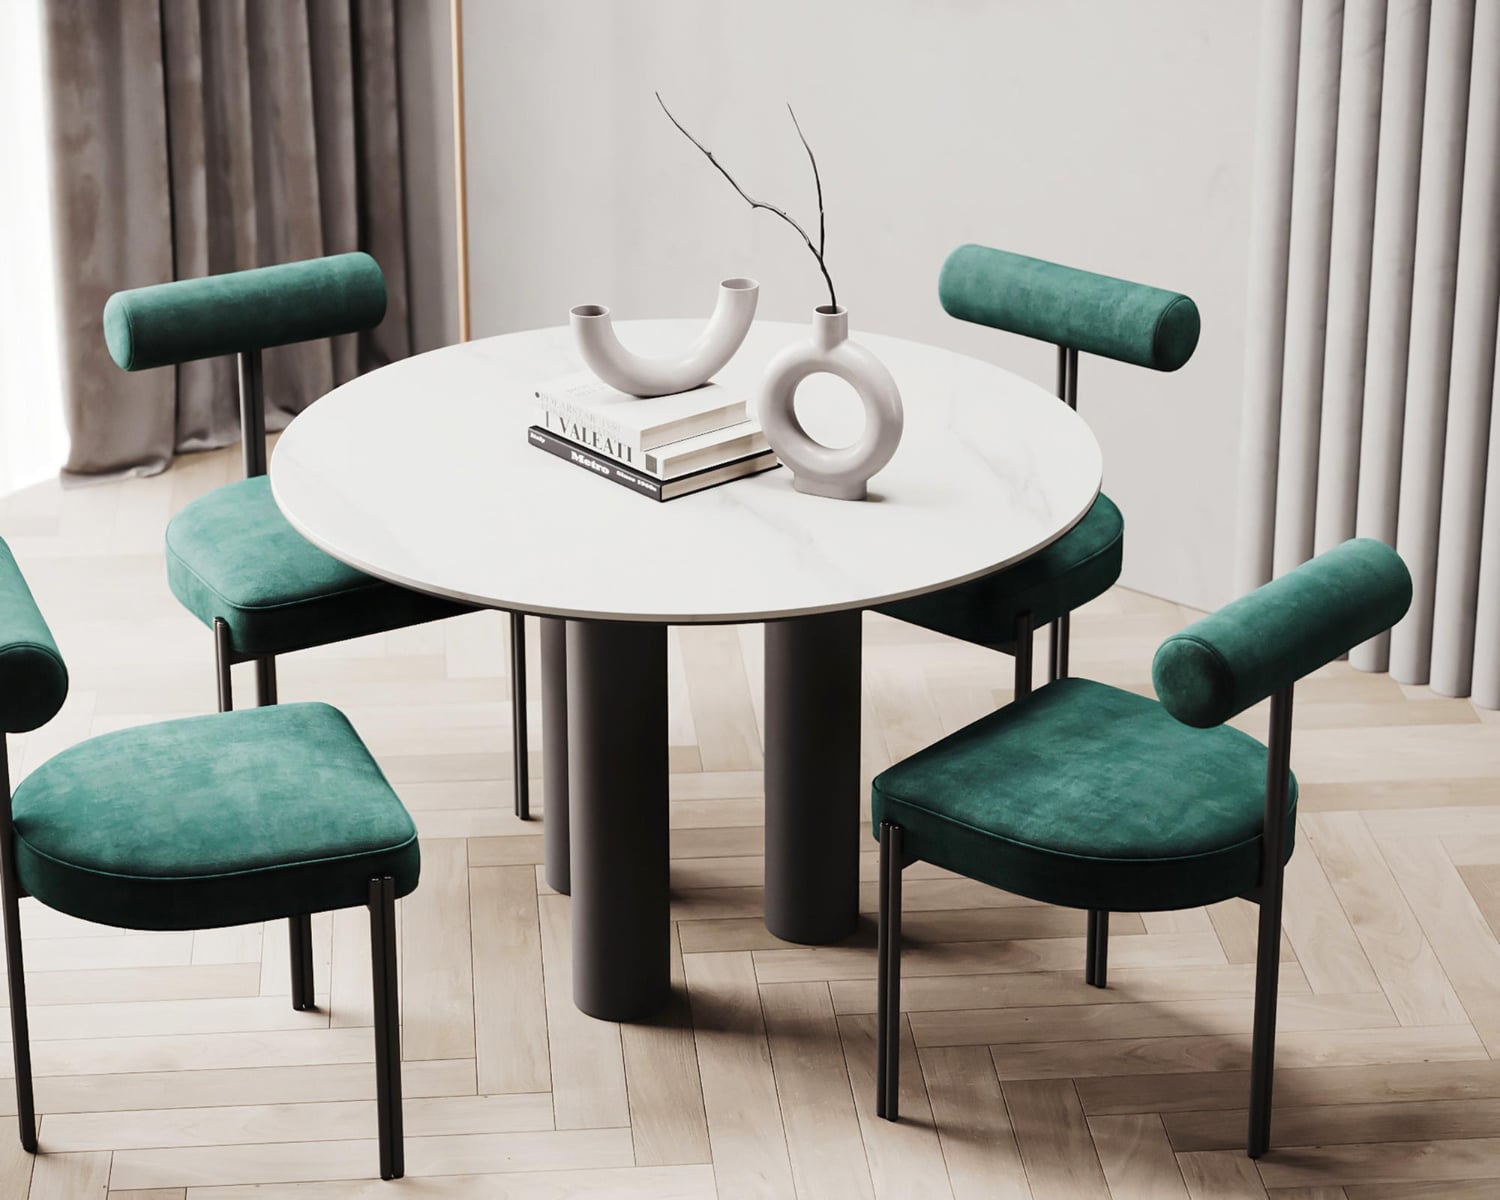 Runde spiseborde | Find rette til dit hjem | Living-concept.dk